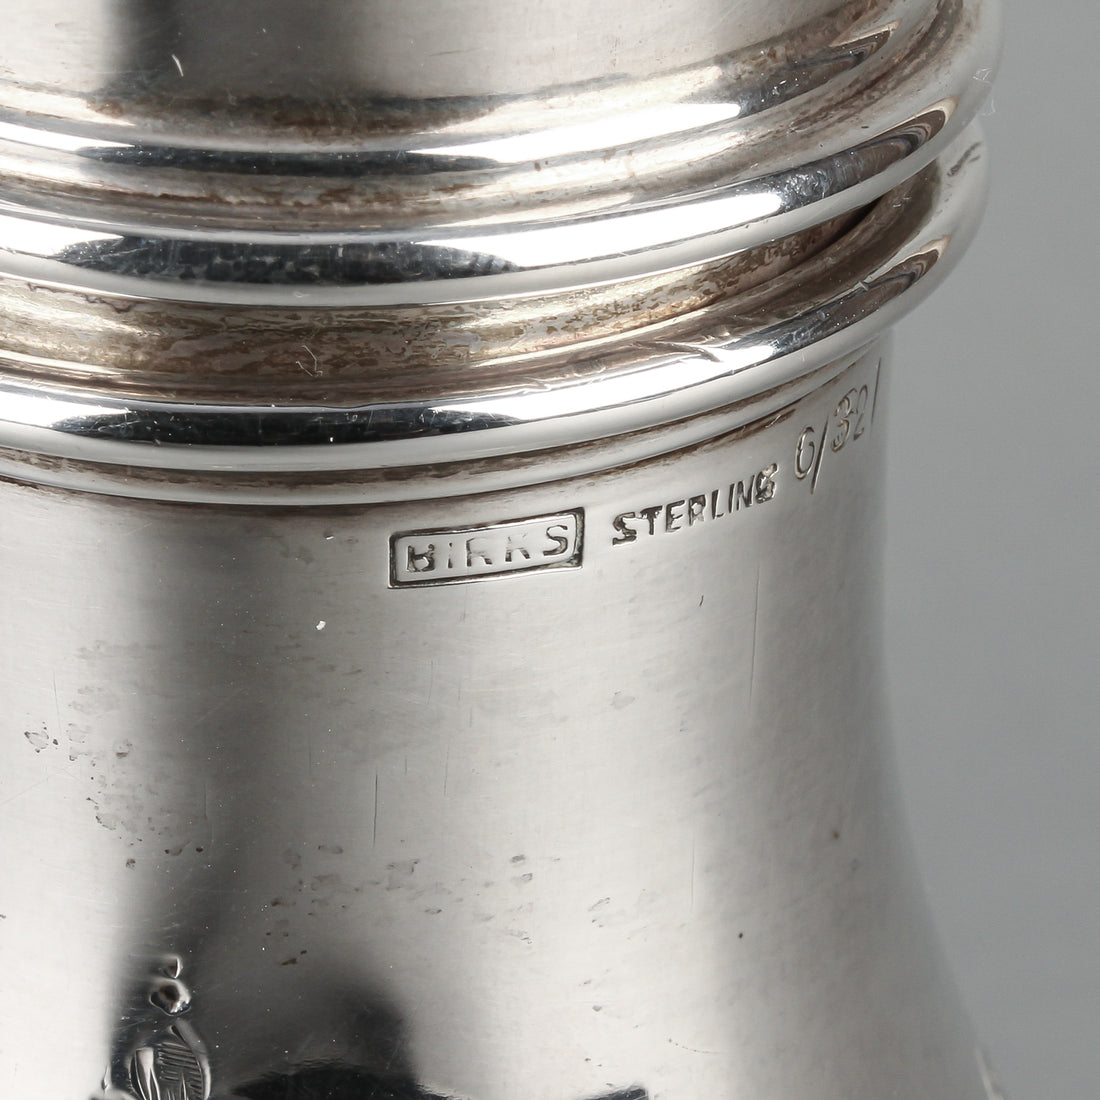 BIRKS Sterling Silver Engraved Sugar Shaker